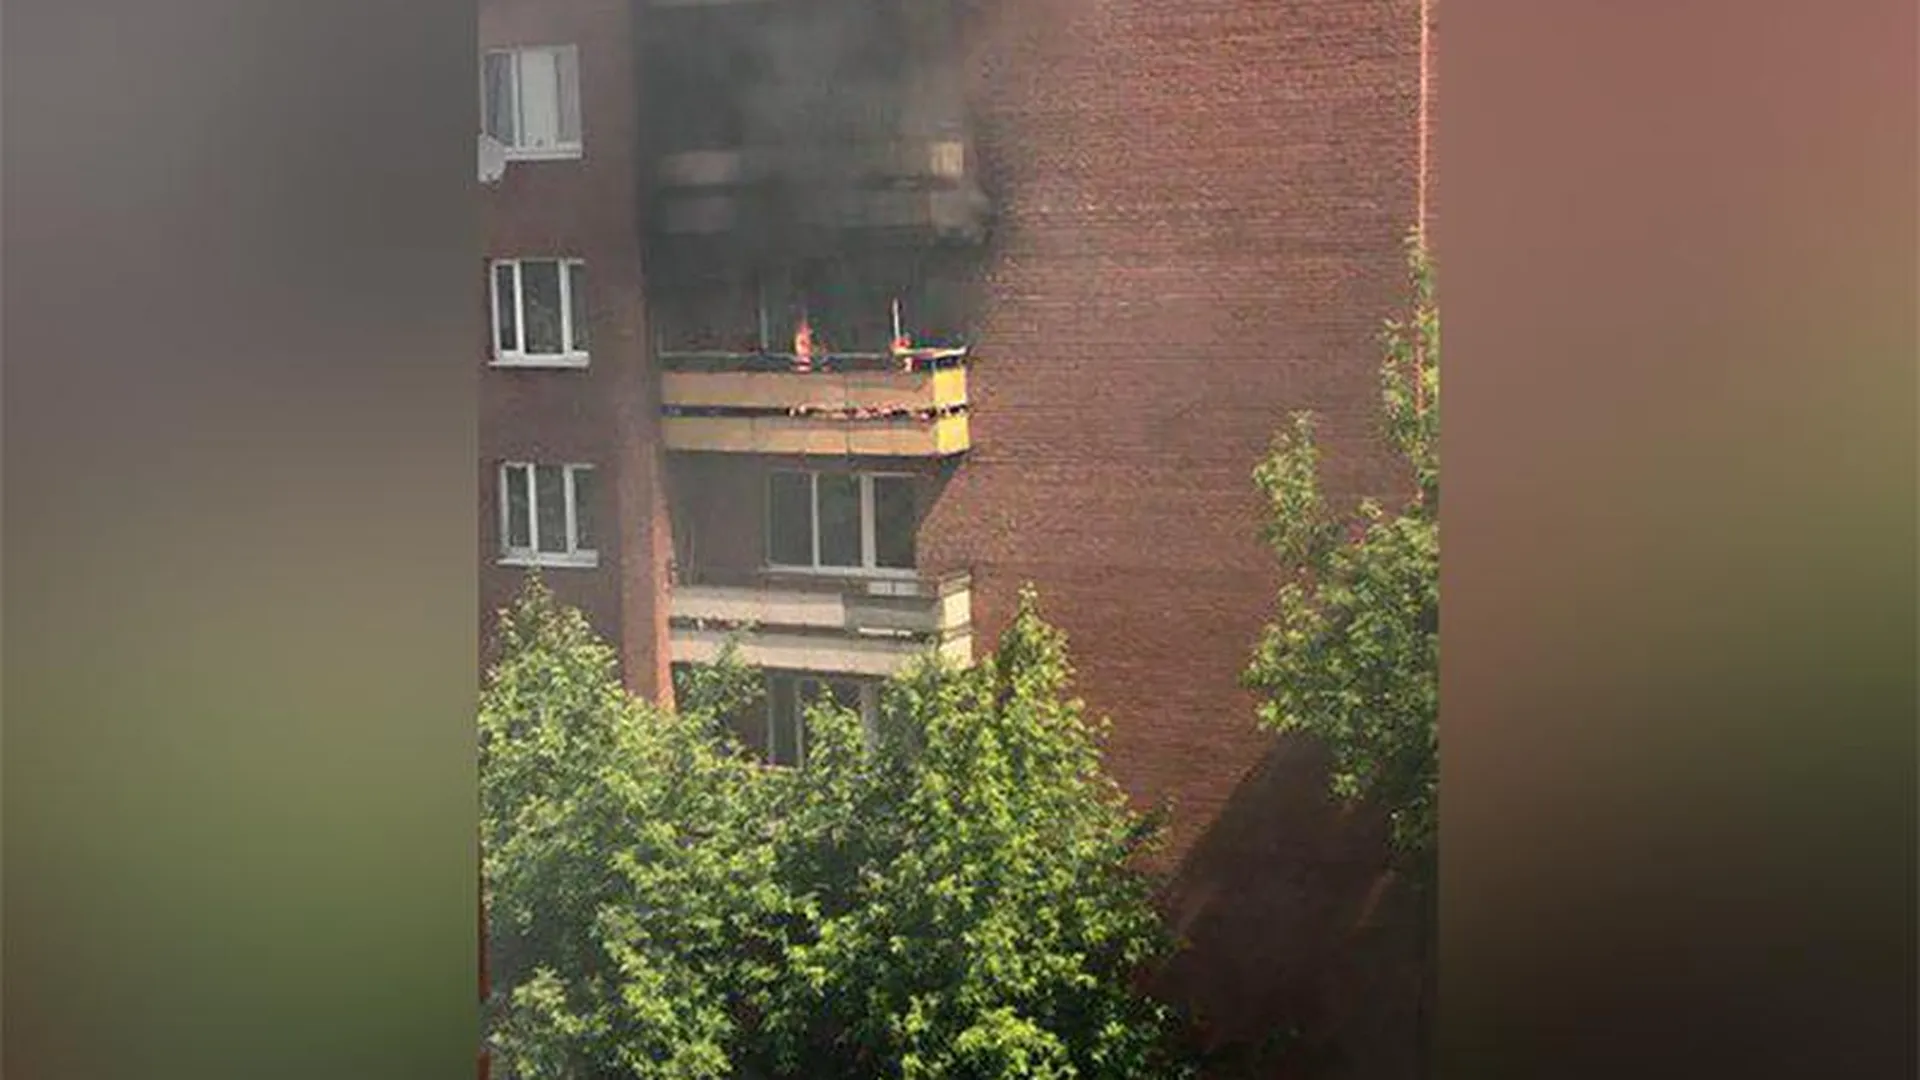 Пожарные ловко затушили мощный пожар в многоэтажке в Орехово-Зуево